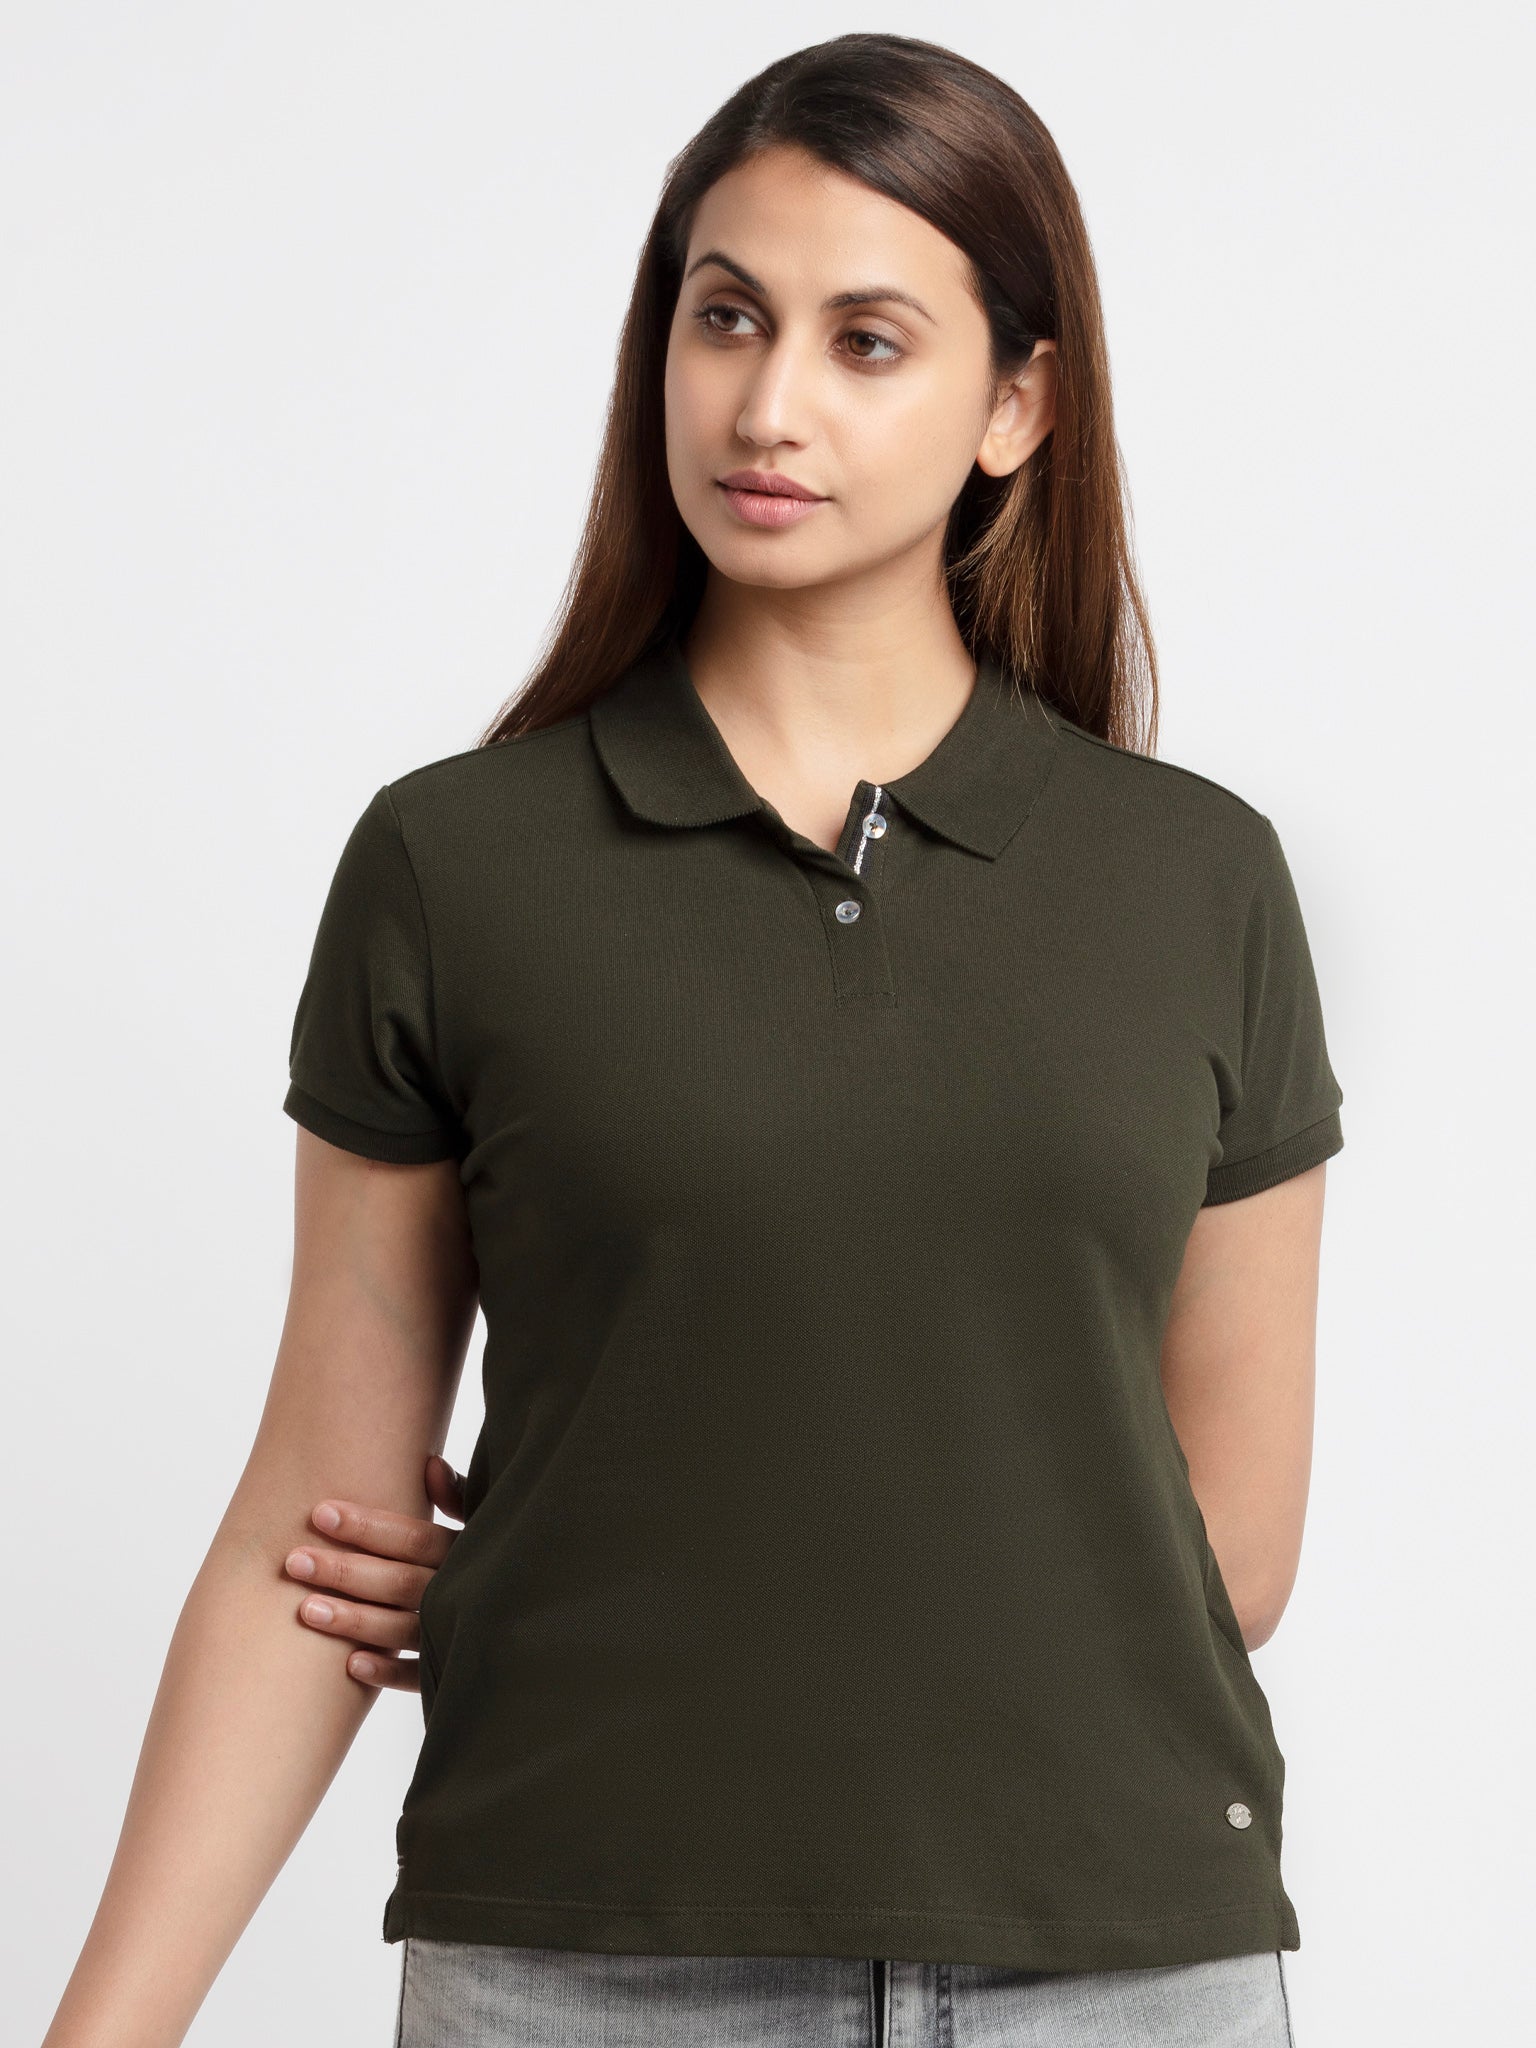 Buy Womens Solid Polo T-Shirt -|Status Quo | S, M,  L,  XL,  XXL, 3XL